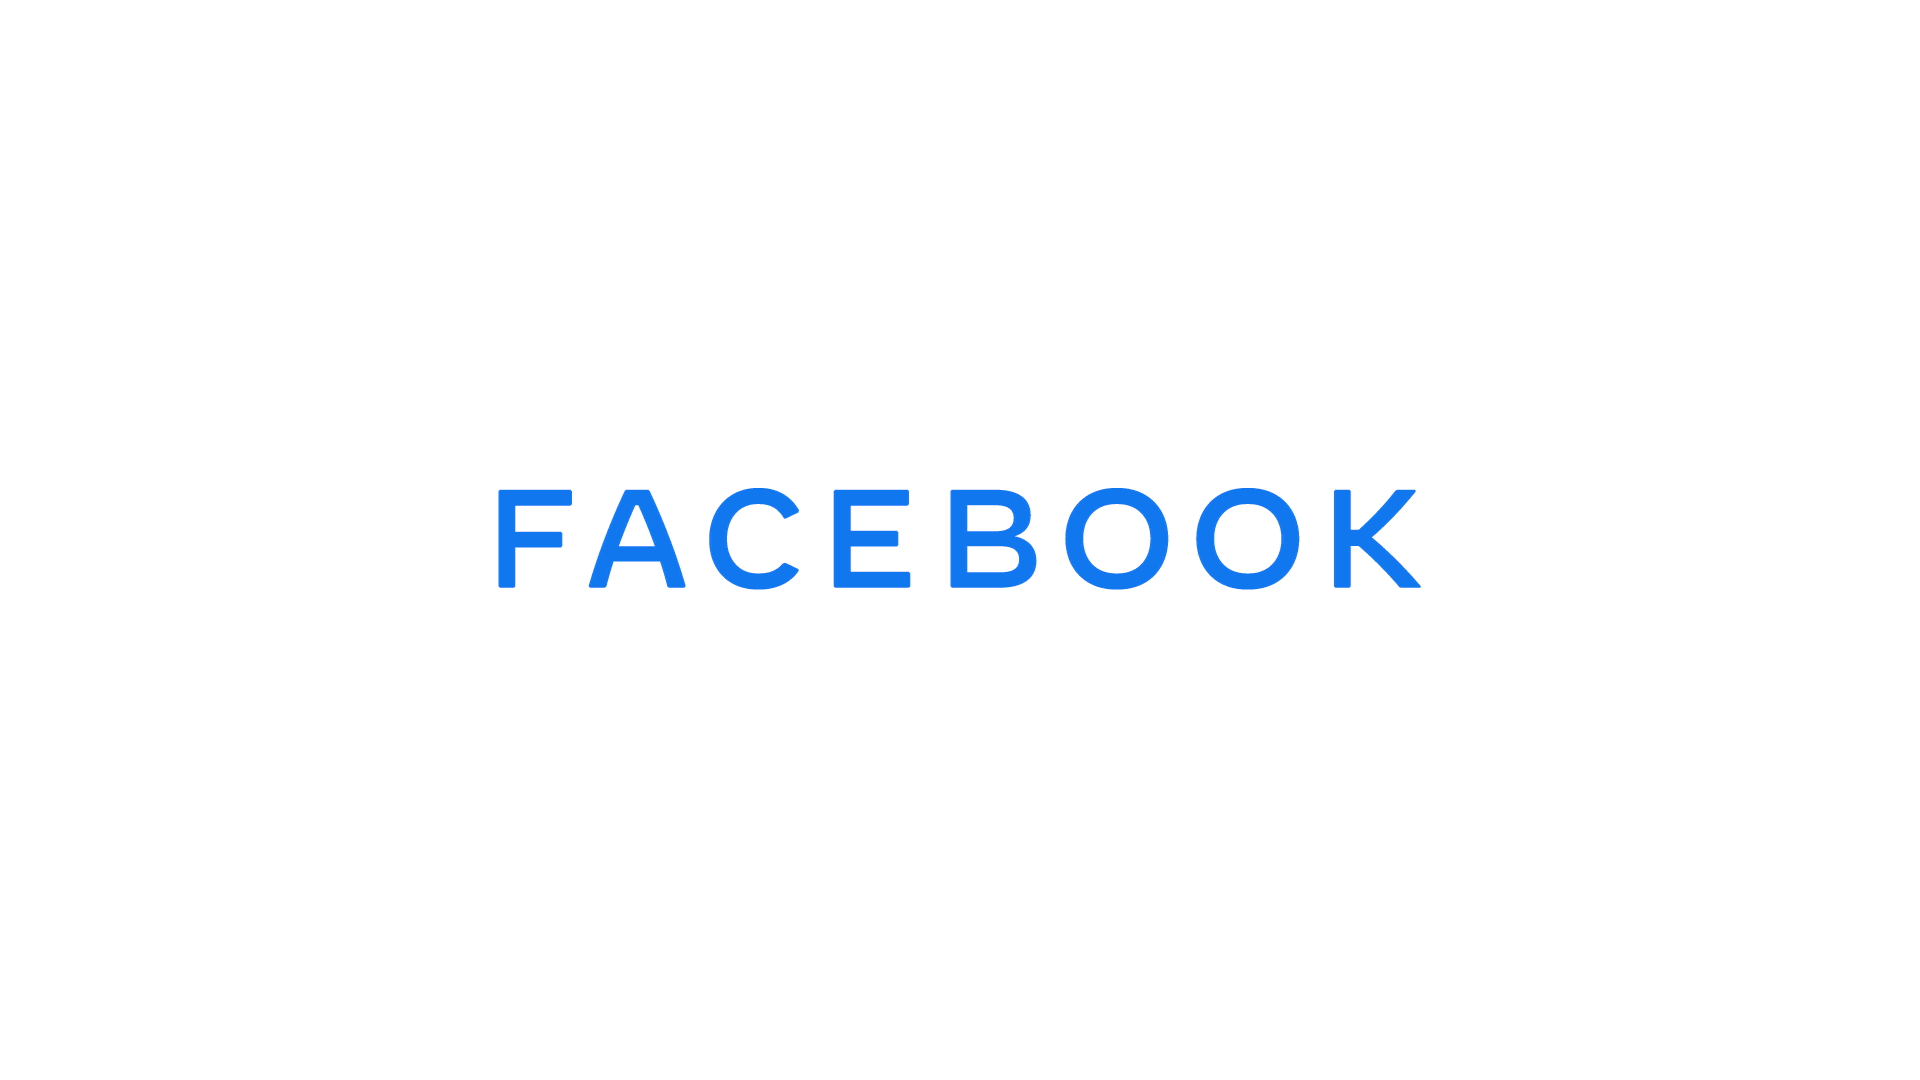 Brandaktuell: Facebook erscheint mit neuem LOGO 8